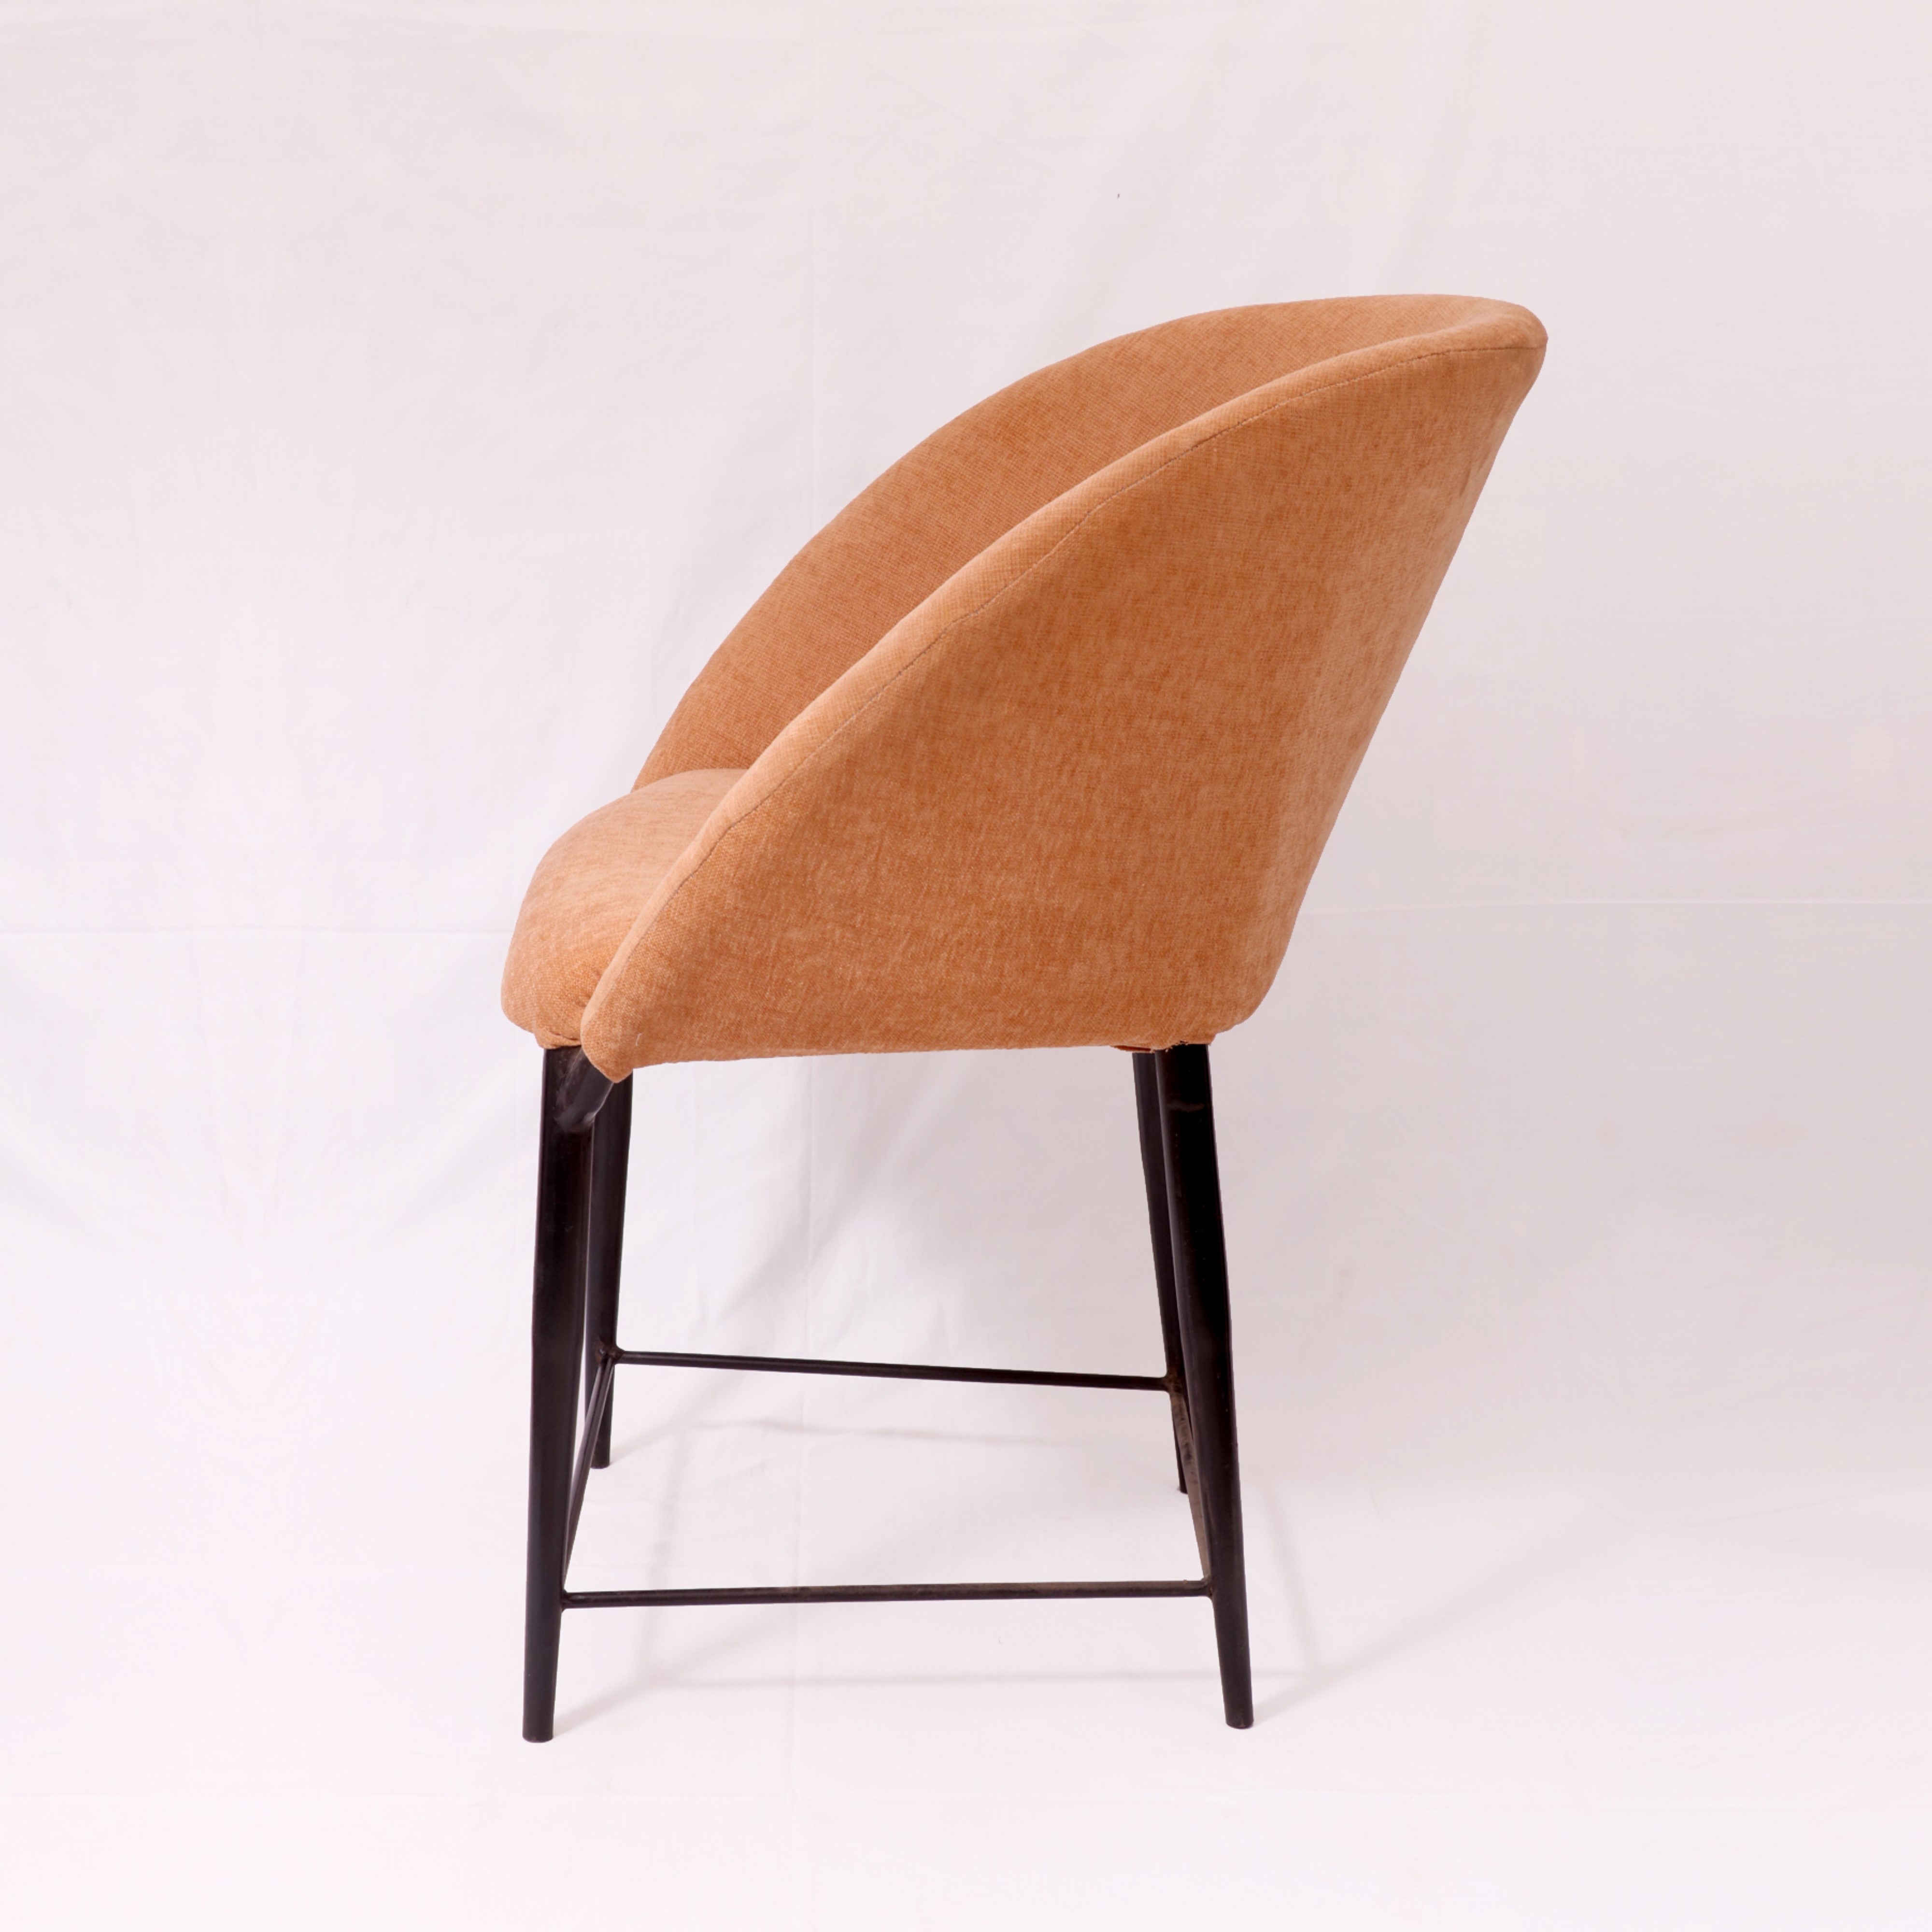 Colorful Metallic Chair Arm Chair